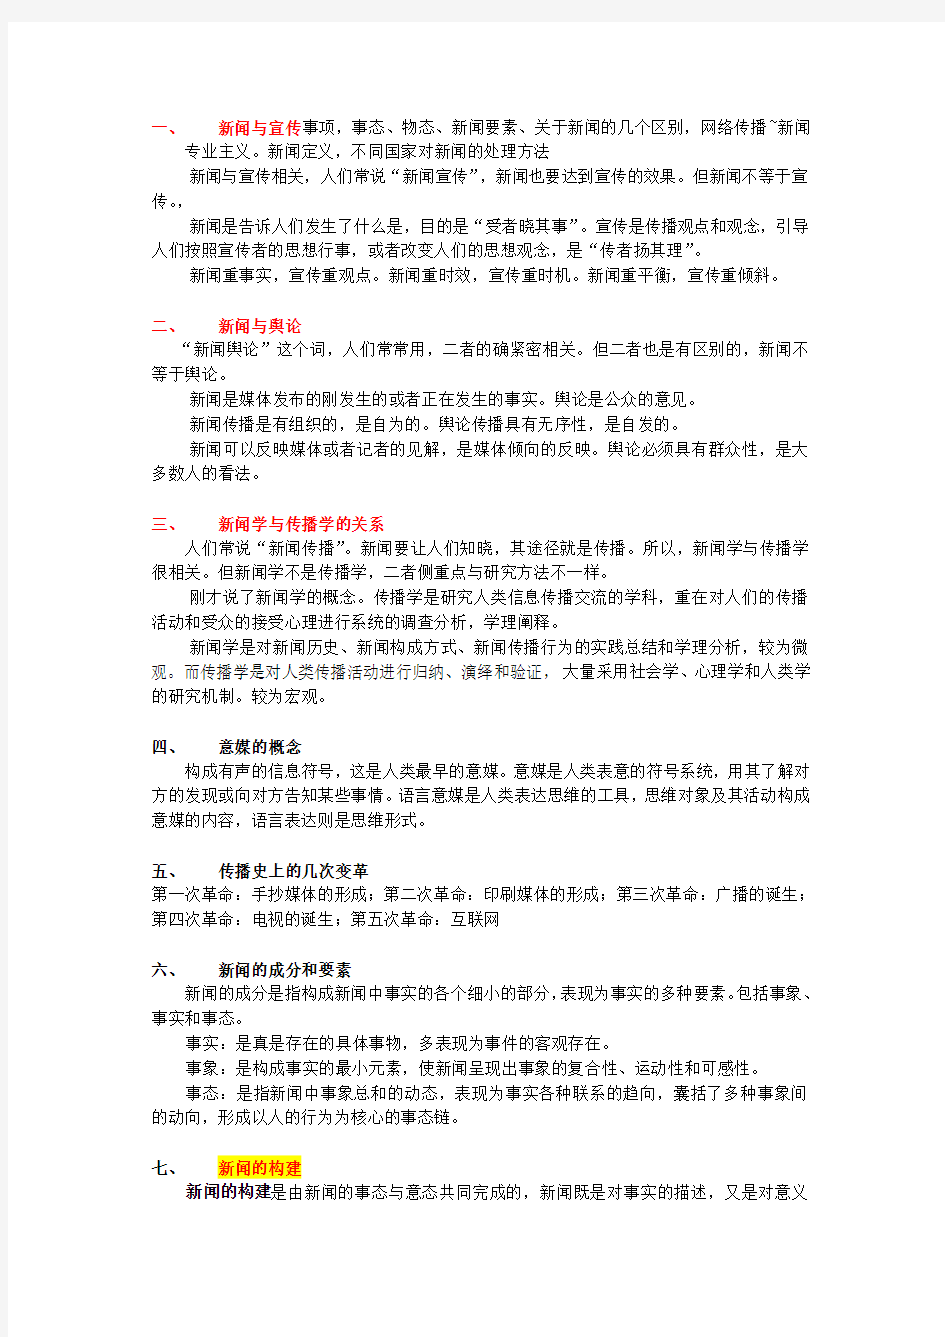 重庆邮电大学传媒艺术学院 新闻学概论 复习资料